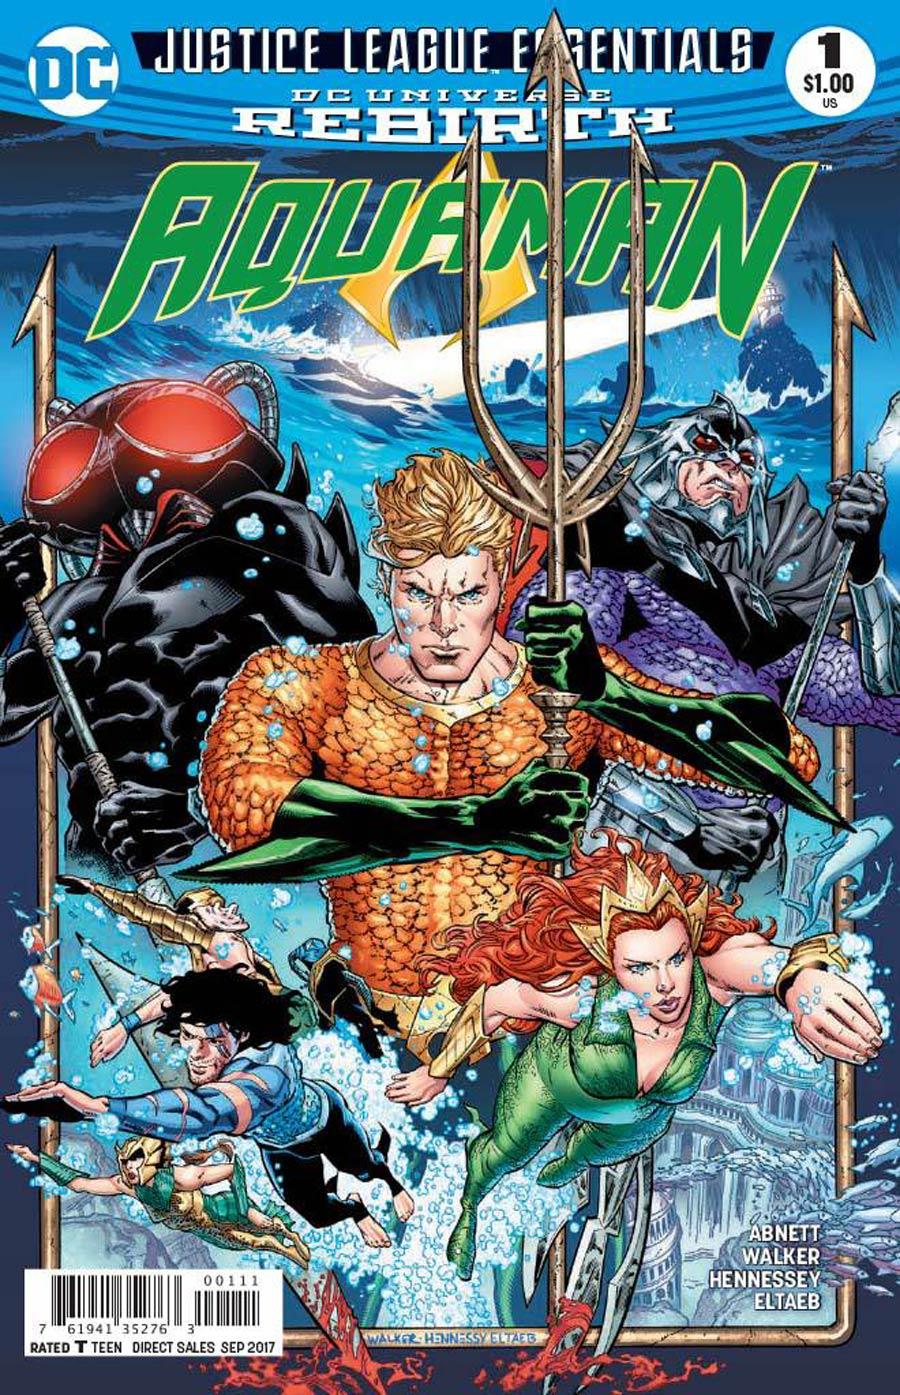 DC Justice League Essentials Aquaman Vol. 1 #1